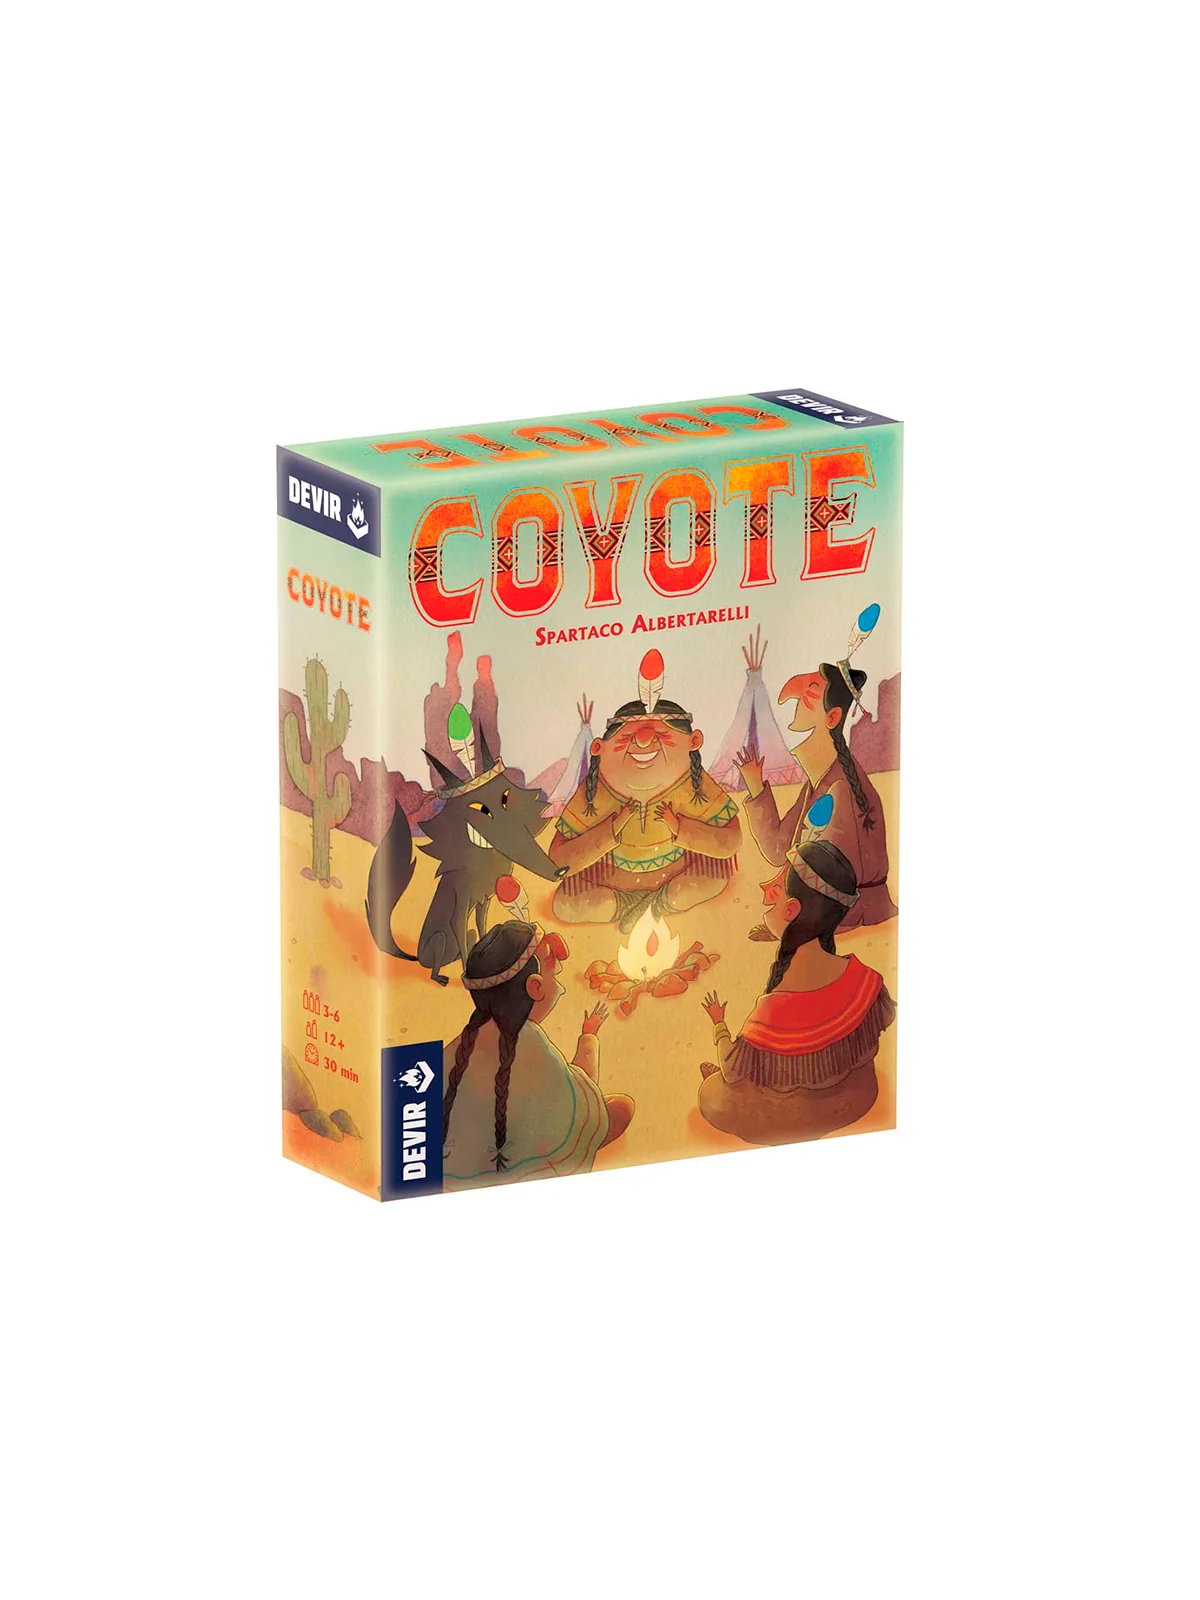 Comprar Coyote barato al mejor precio 18,00 € de Devir